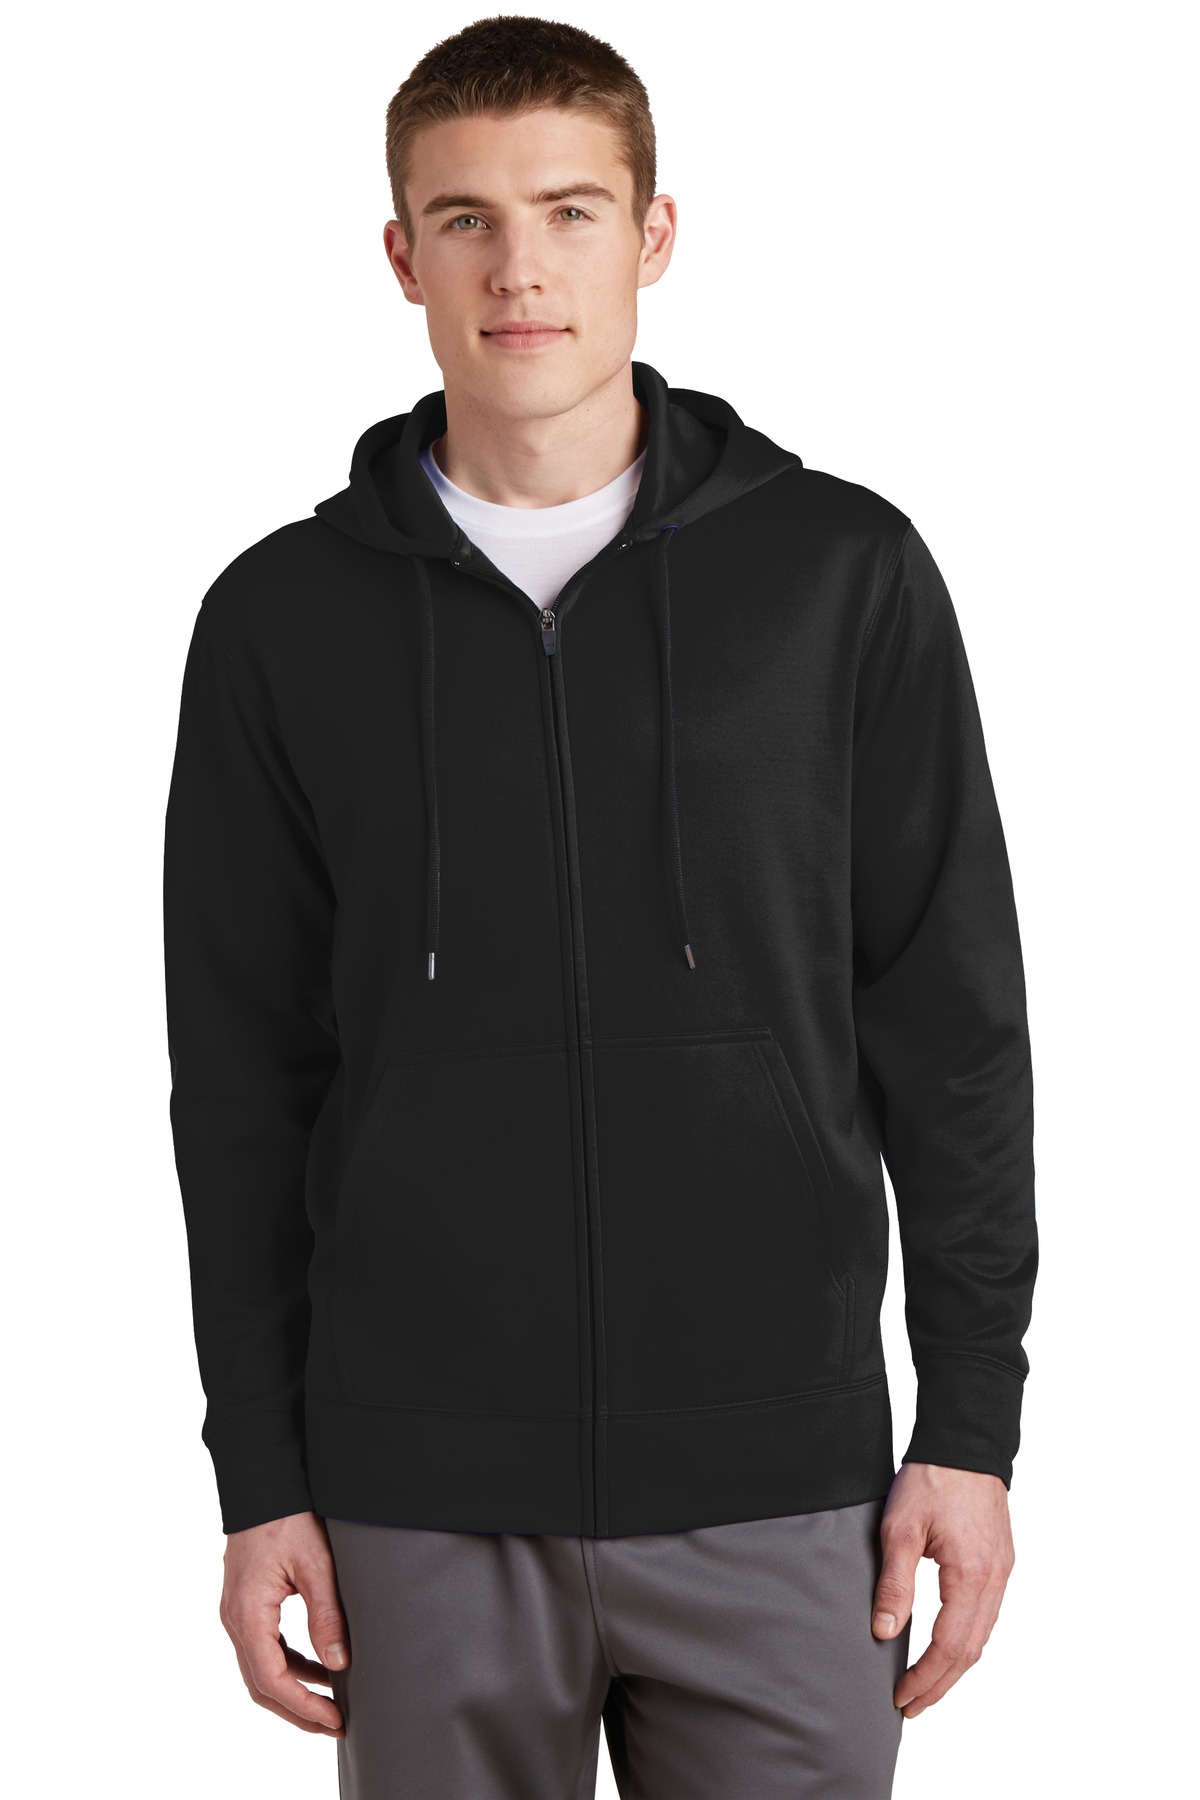 Sport-Tek Hospitality Sweatshirts & Fleece ® Sport-Wick® Fleece Full-Zip Hooded Jacket.-Sport-Tek